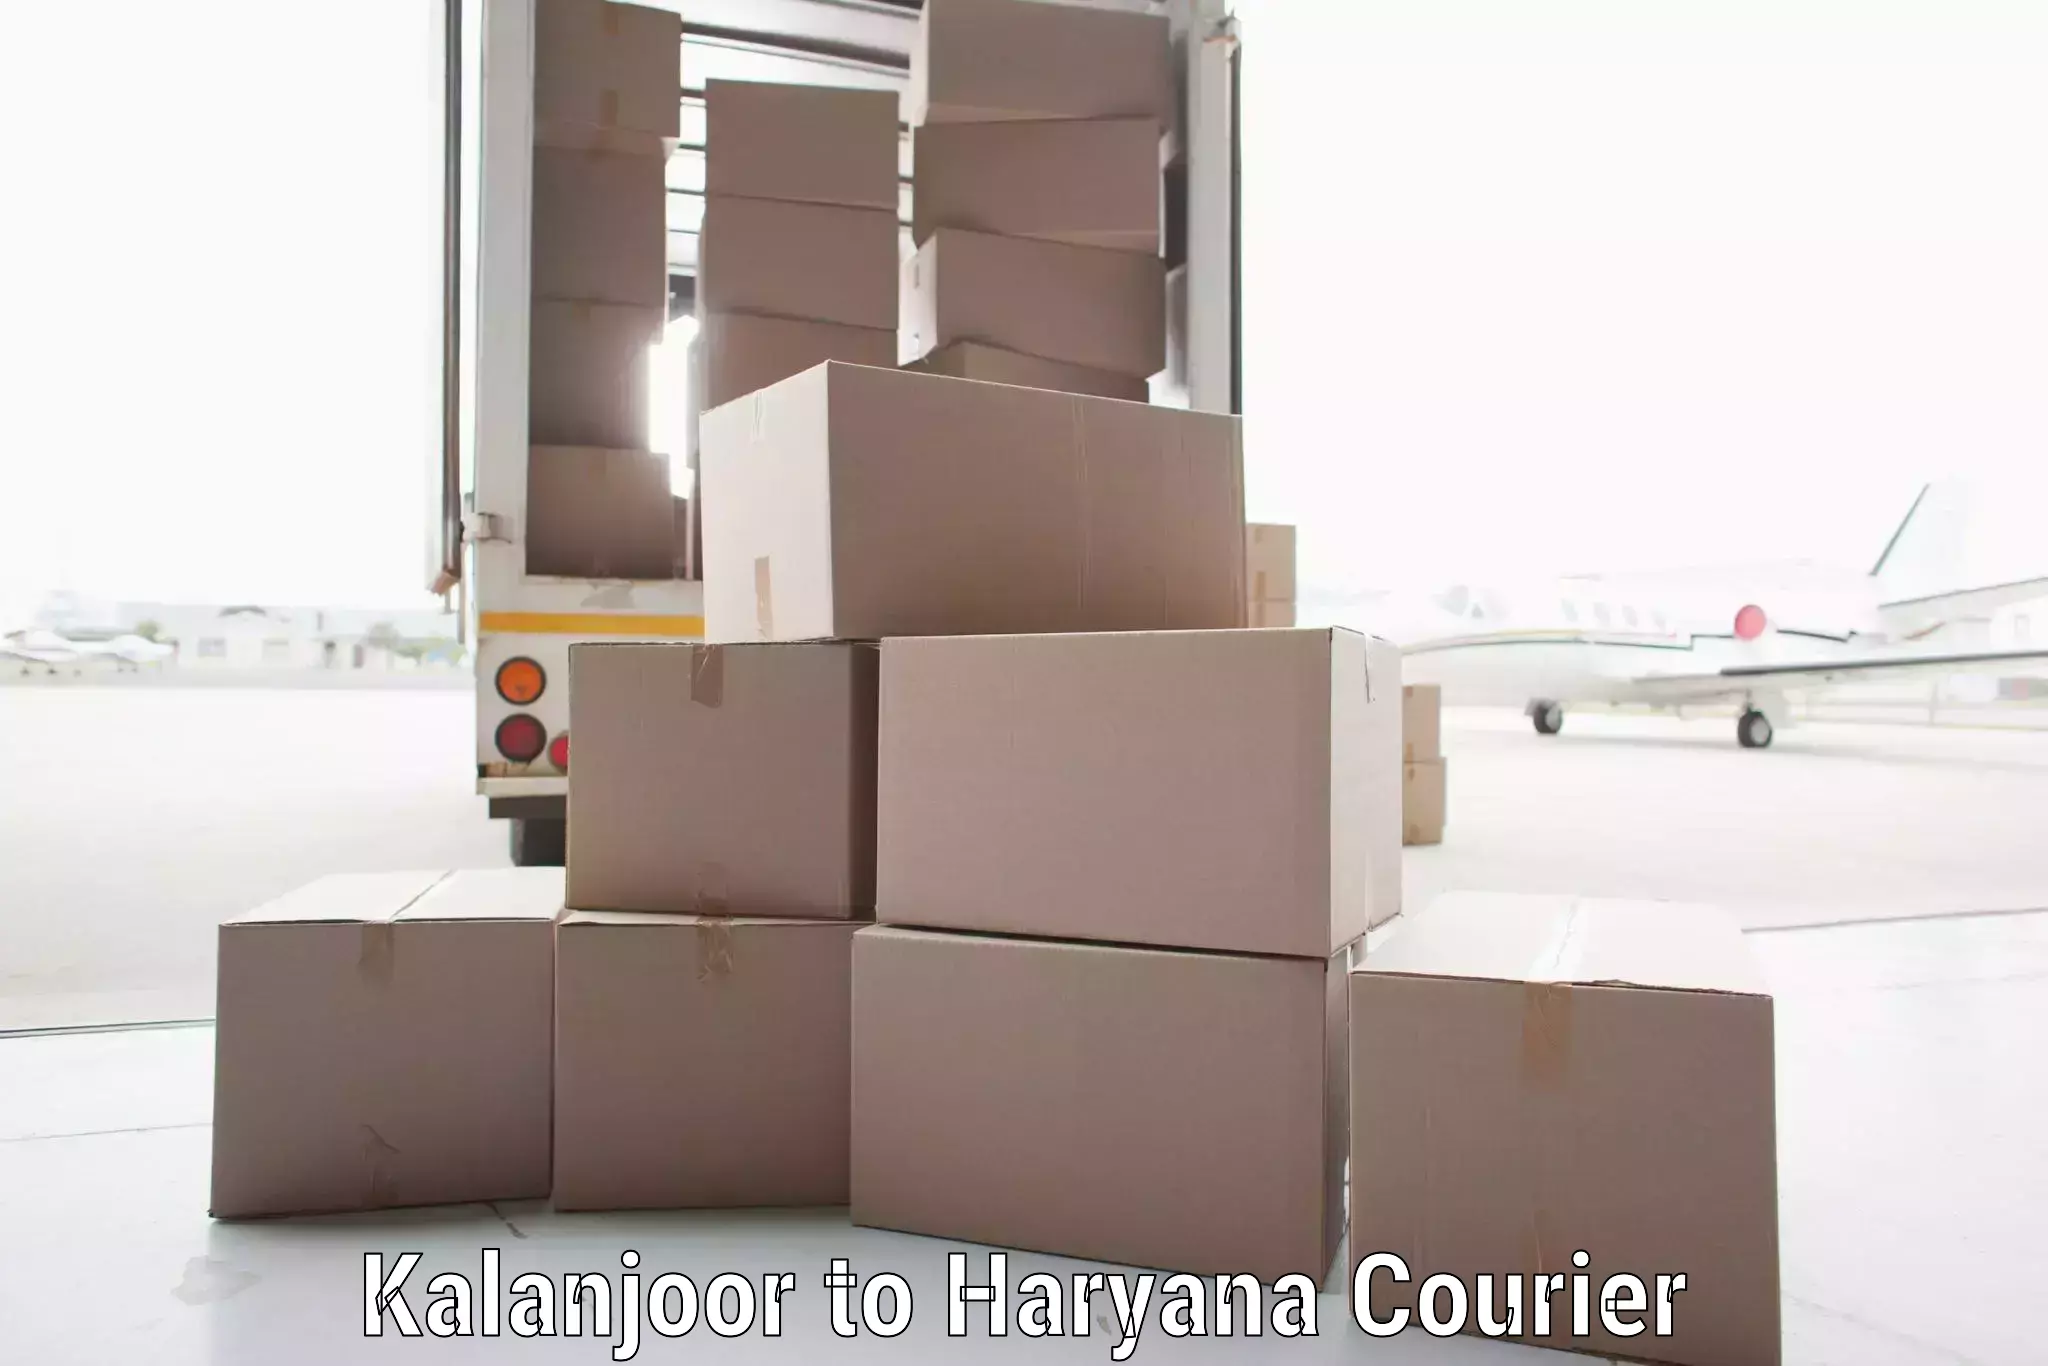 Shipping and handling in Kalanjoor to Panipat